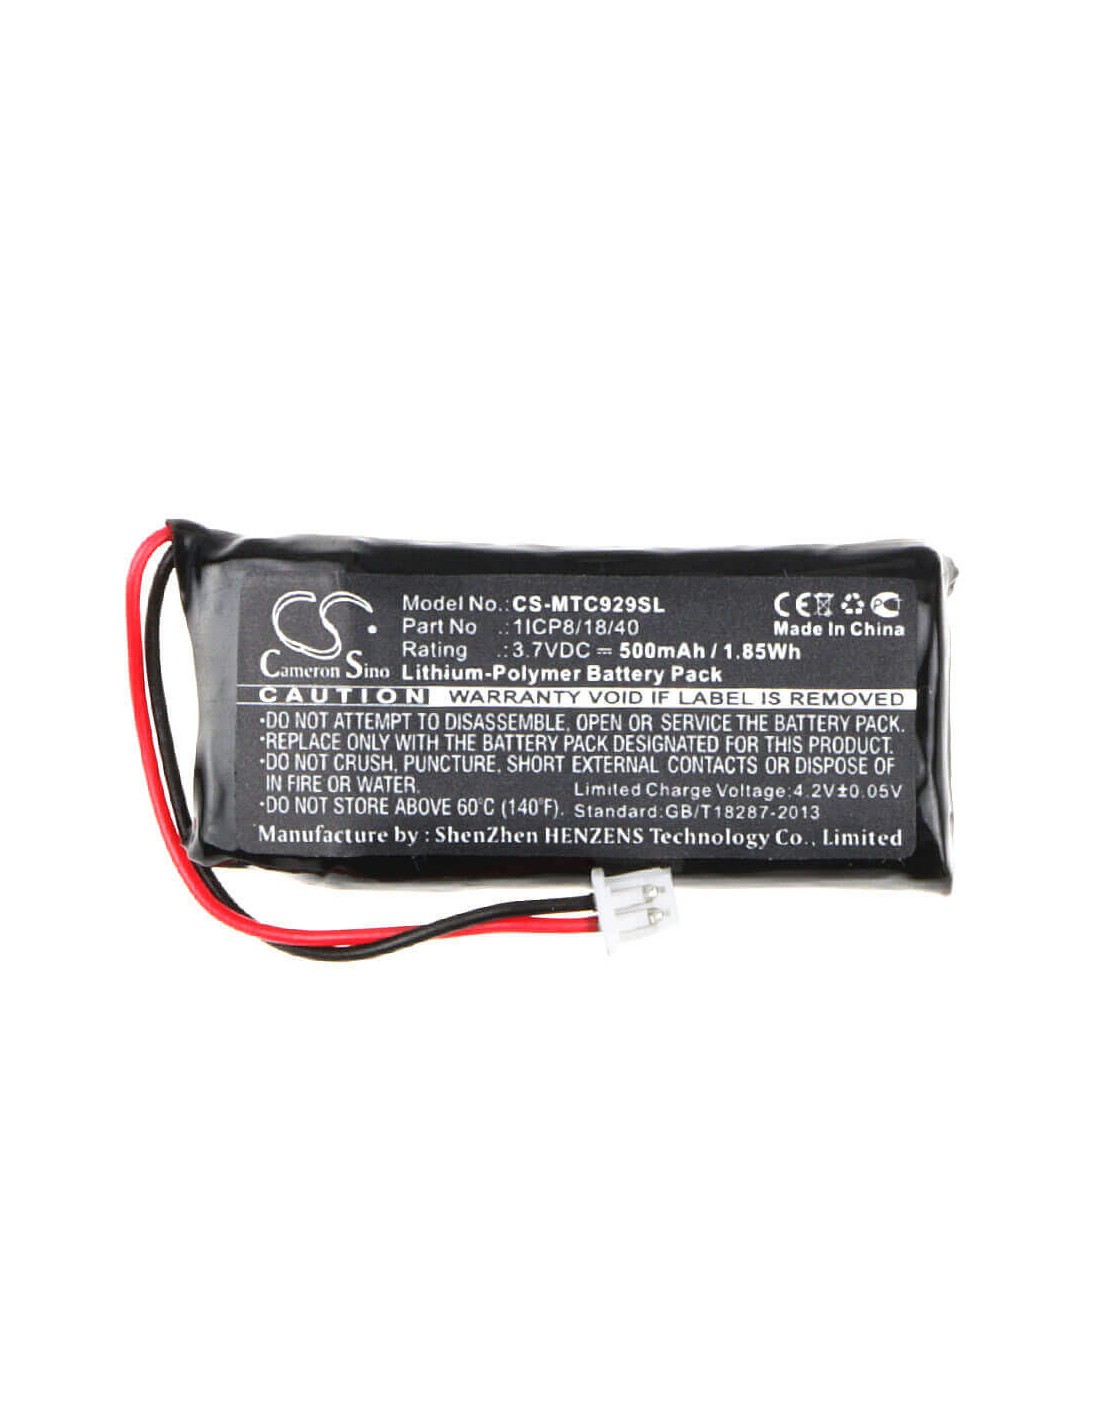 Battery for Midland Bt City, C929.01 3.7V, 500mAh - 1.85Wh